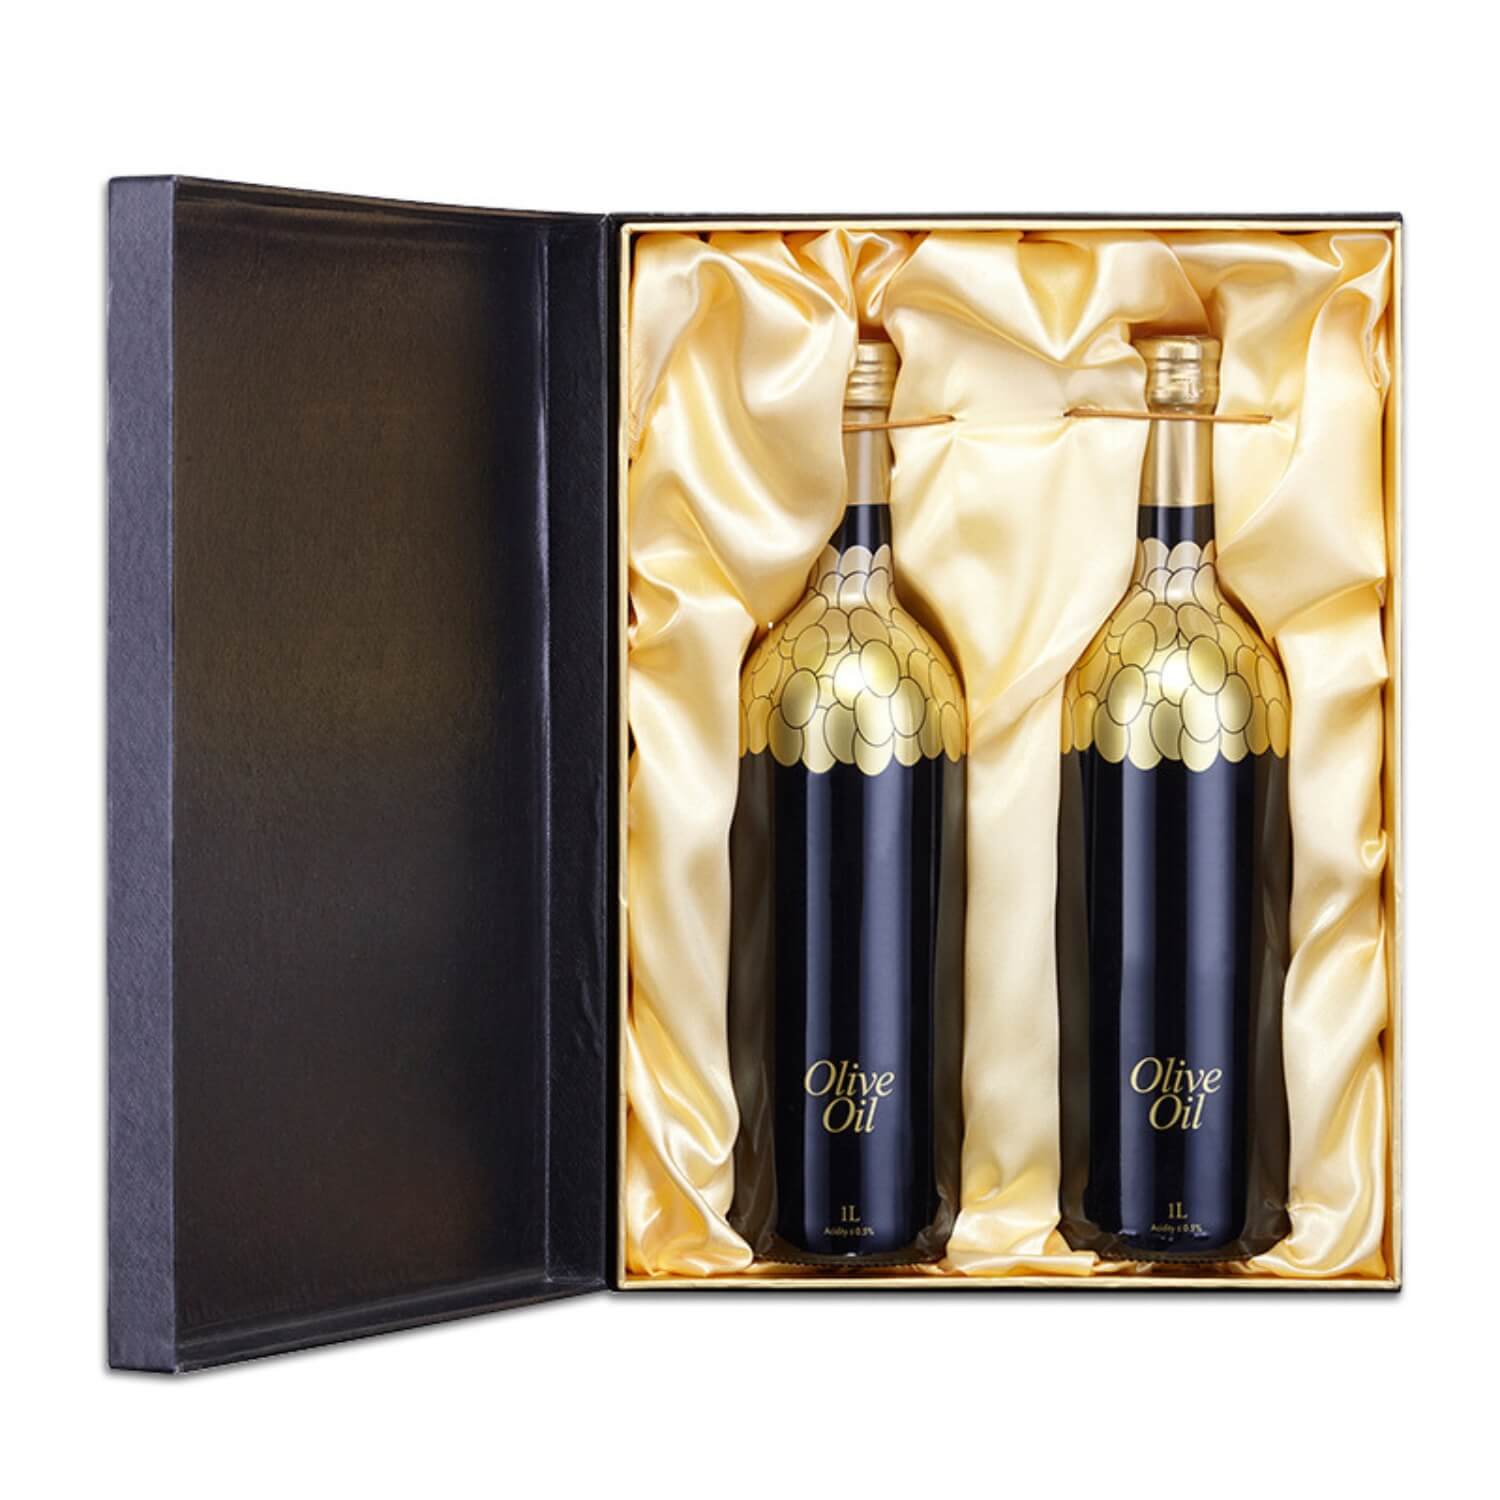 Olive oil luxury packaging